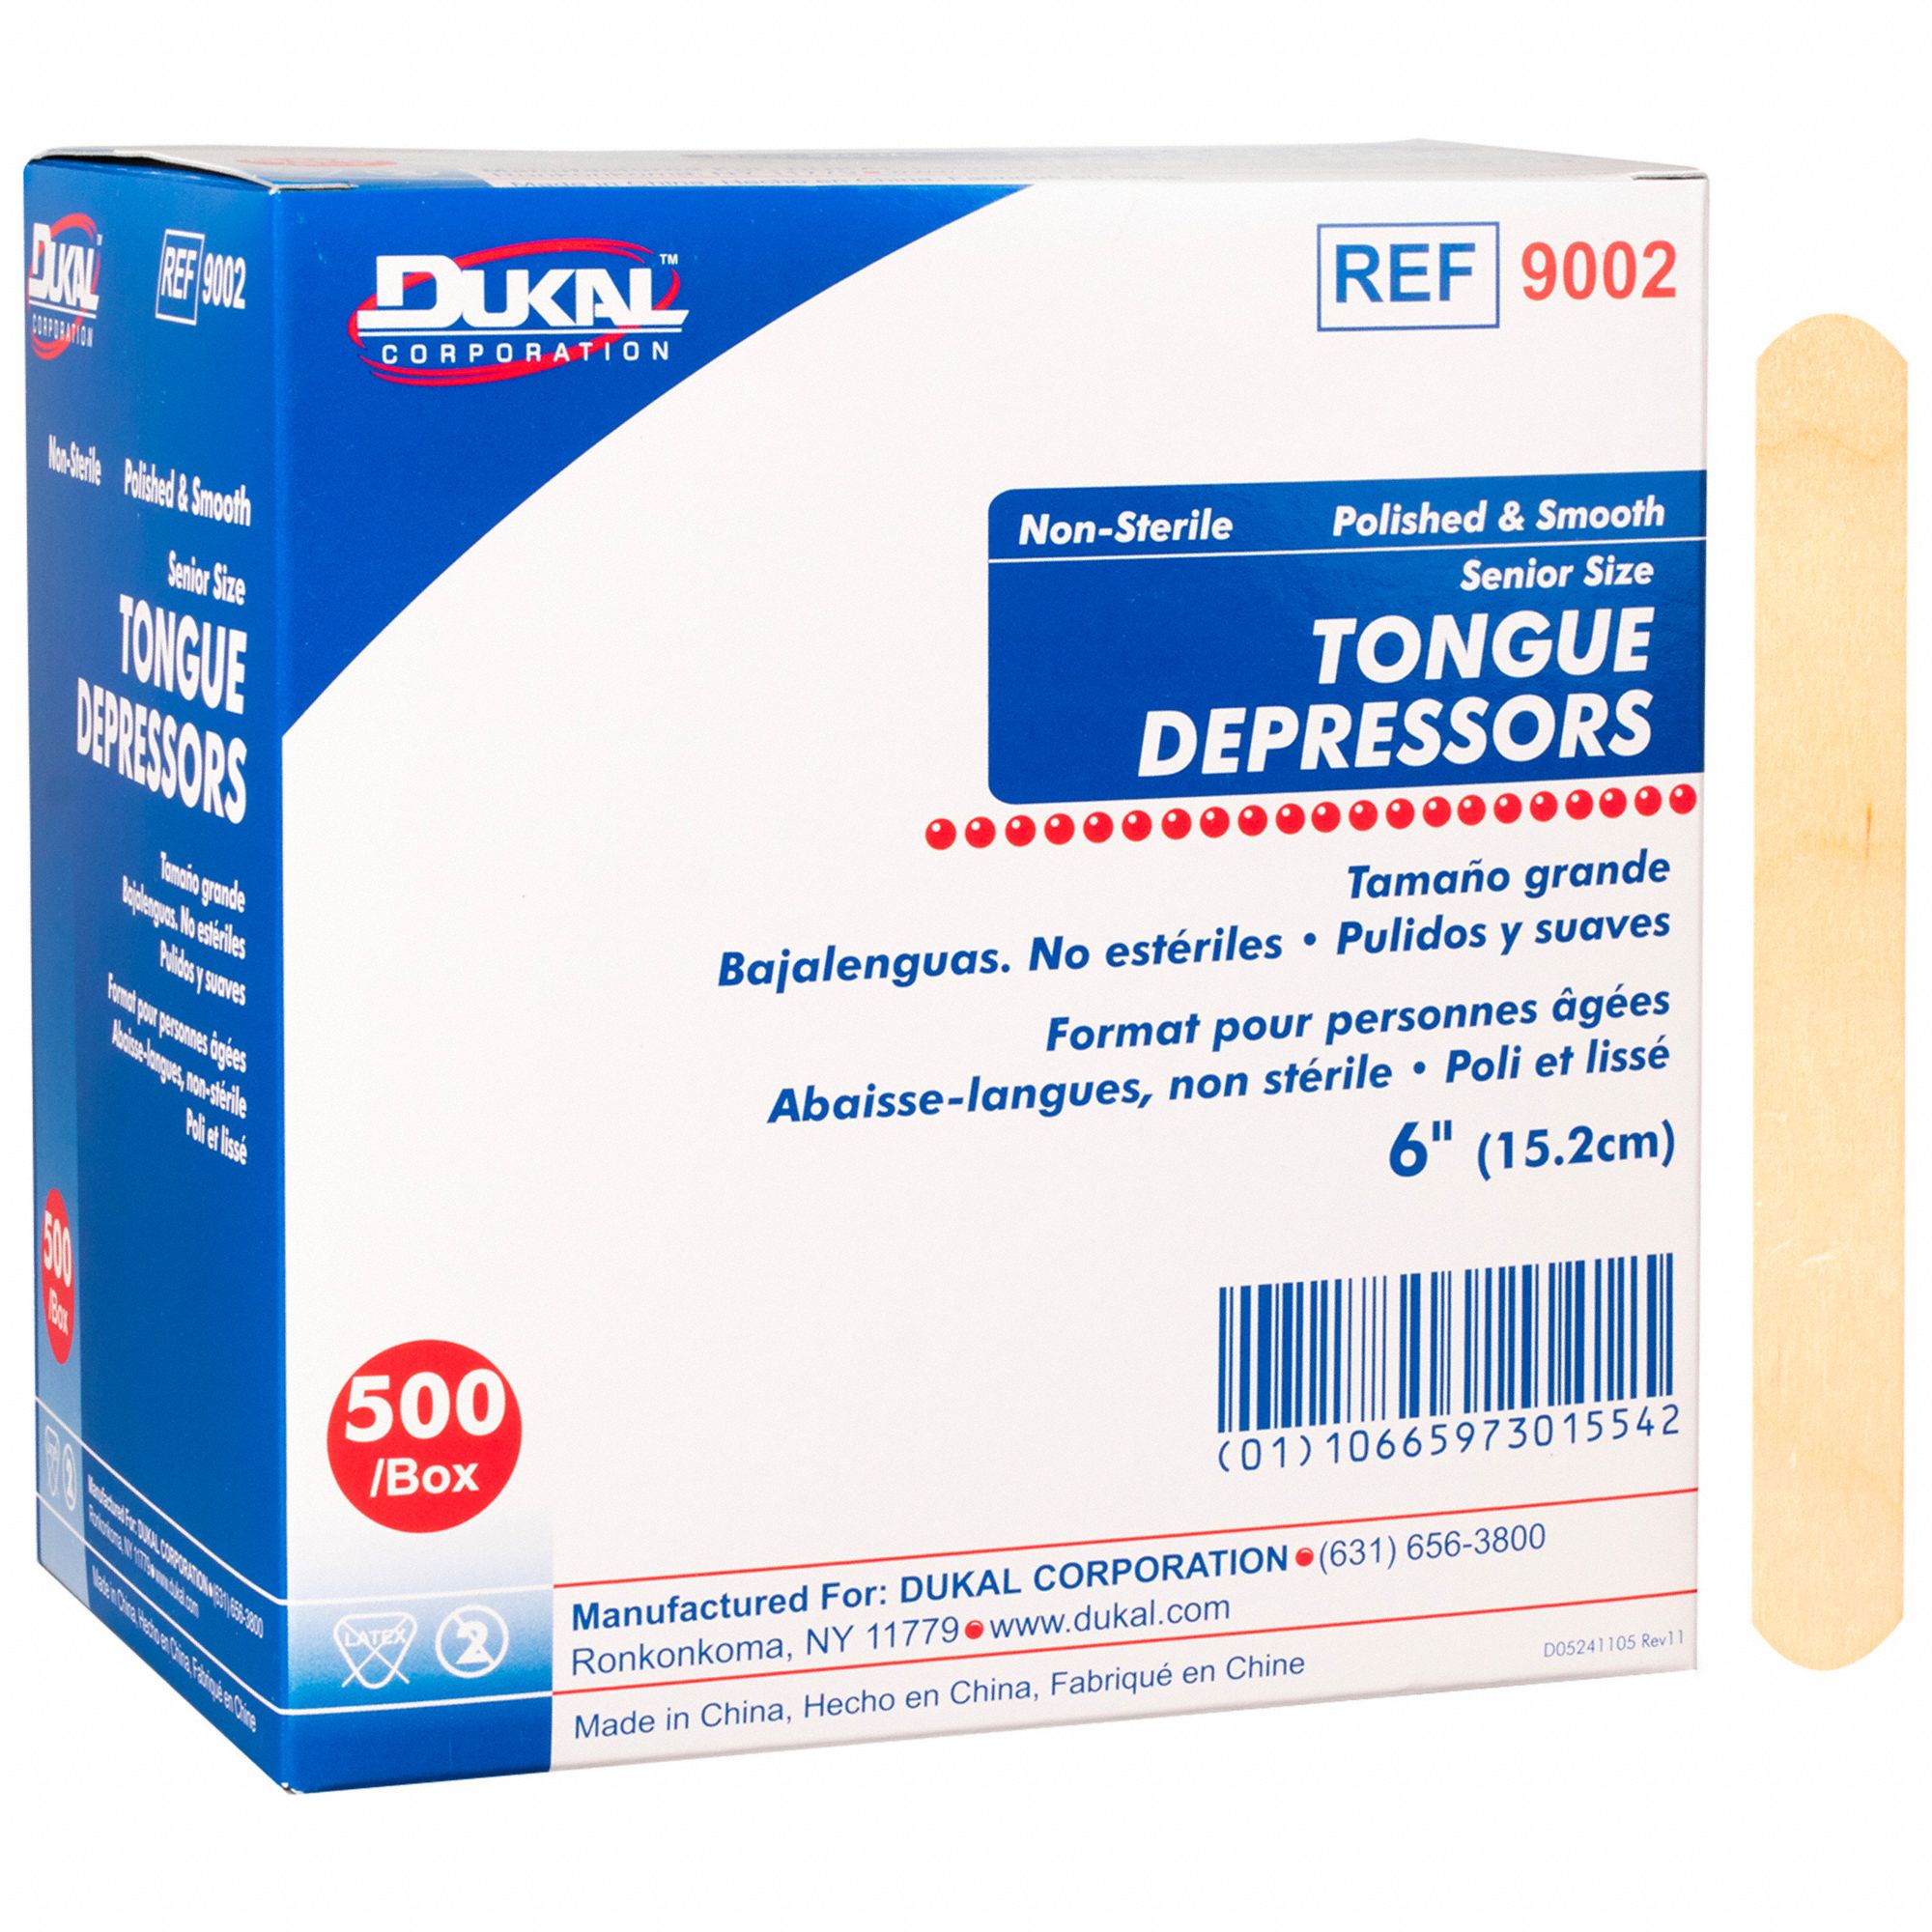 Tongue Depressors: Non-Sterile, 6 in Lg, 500 PK